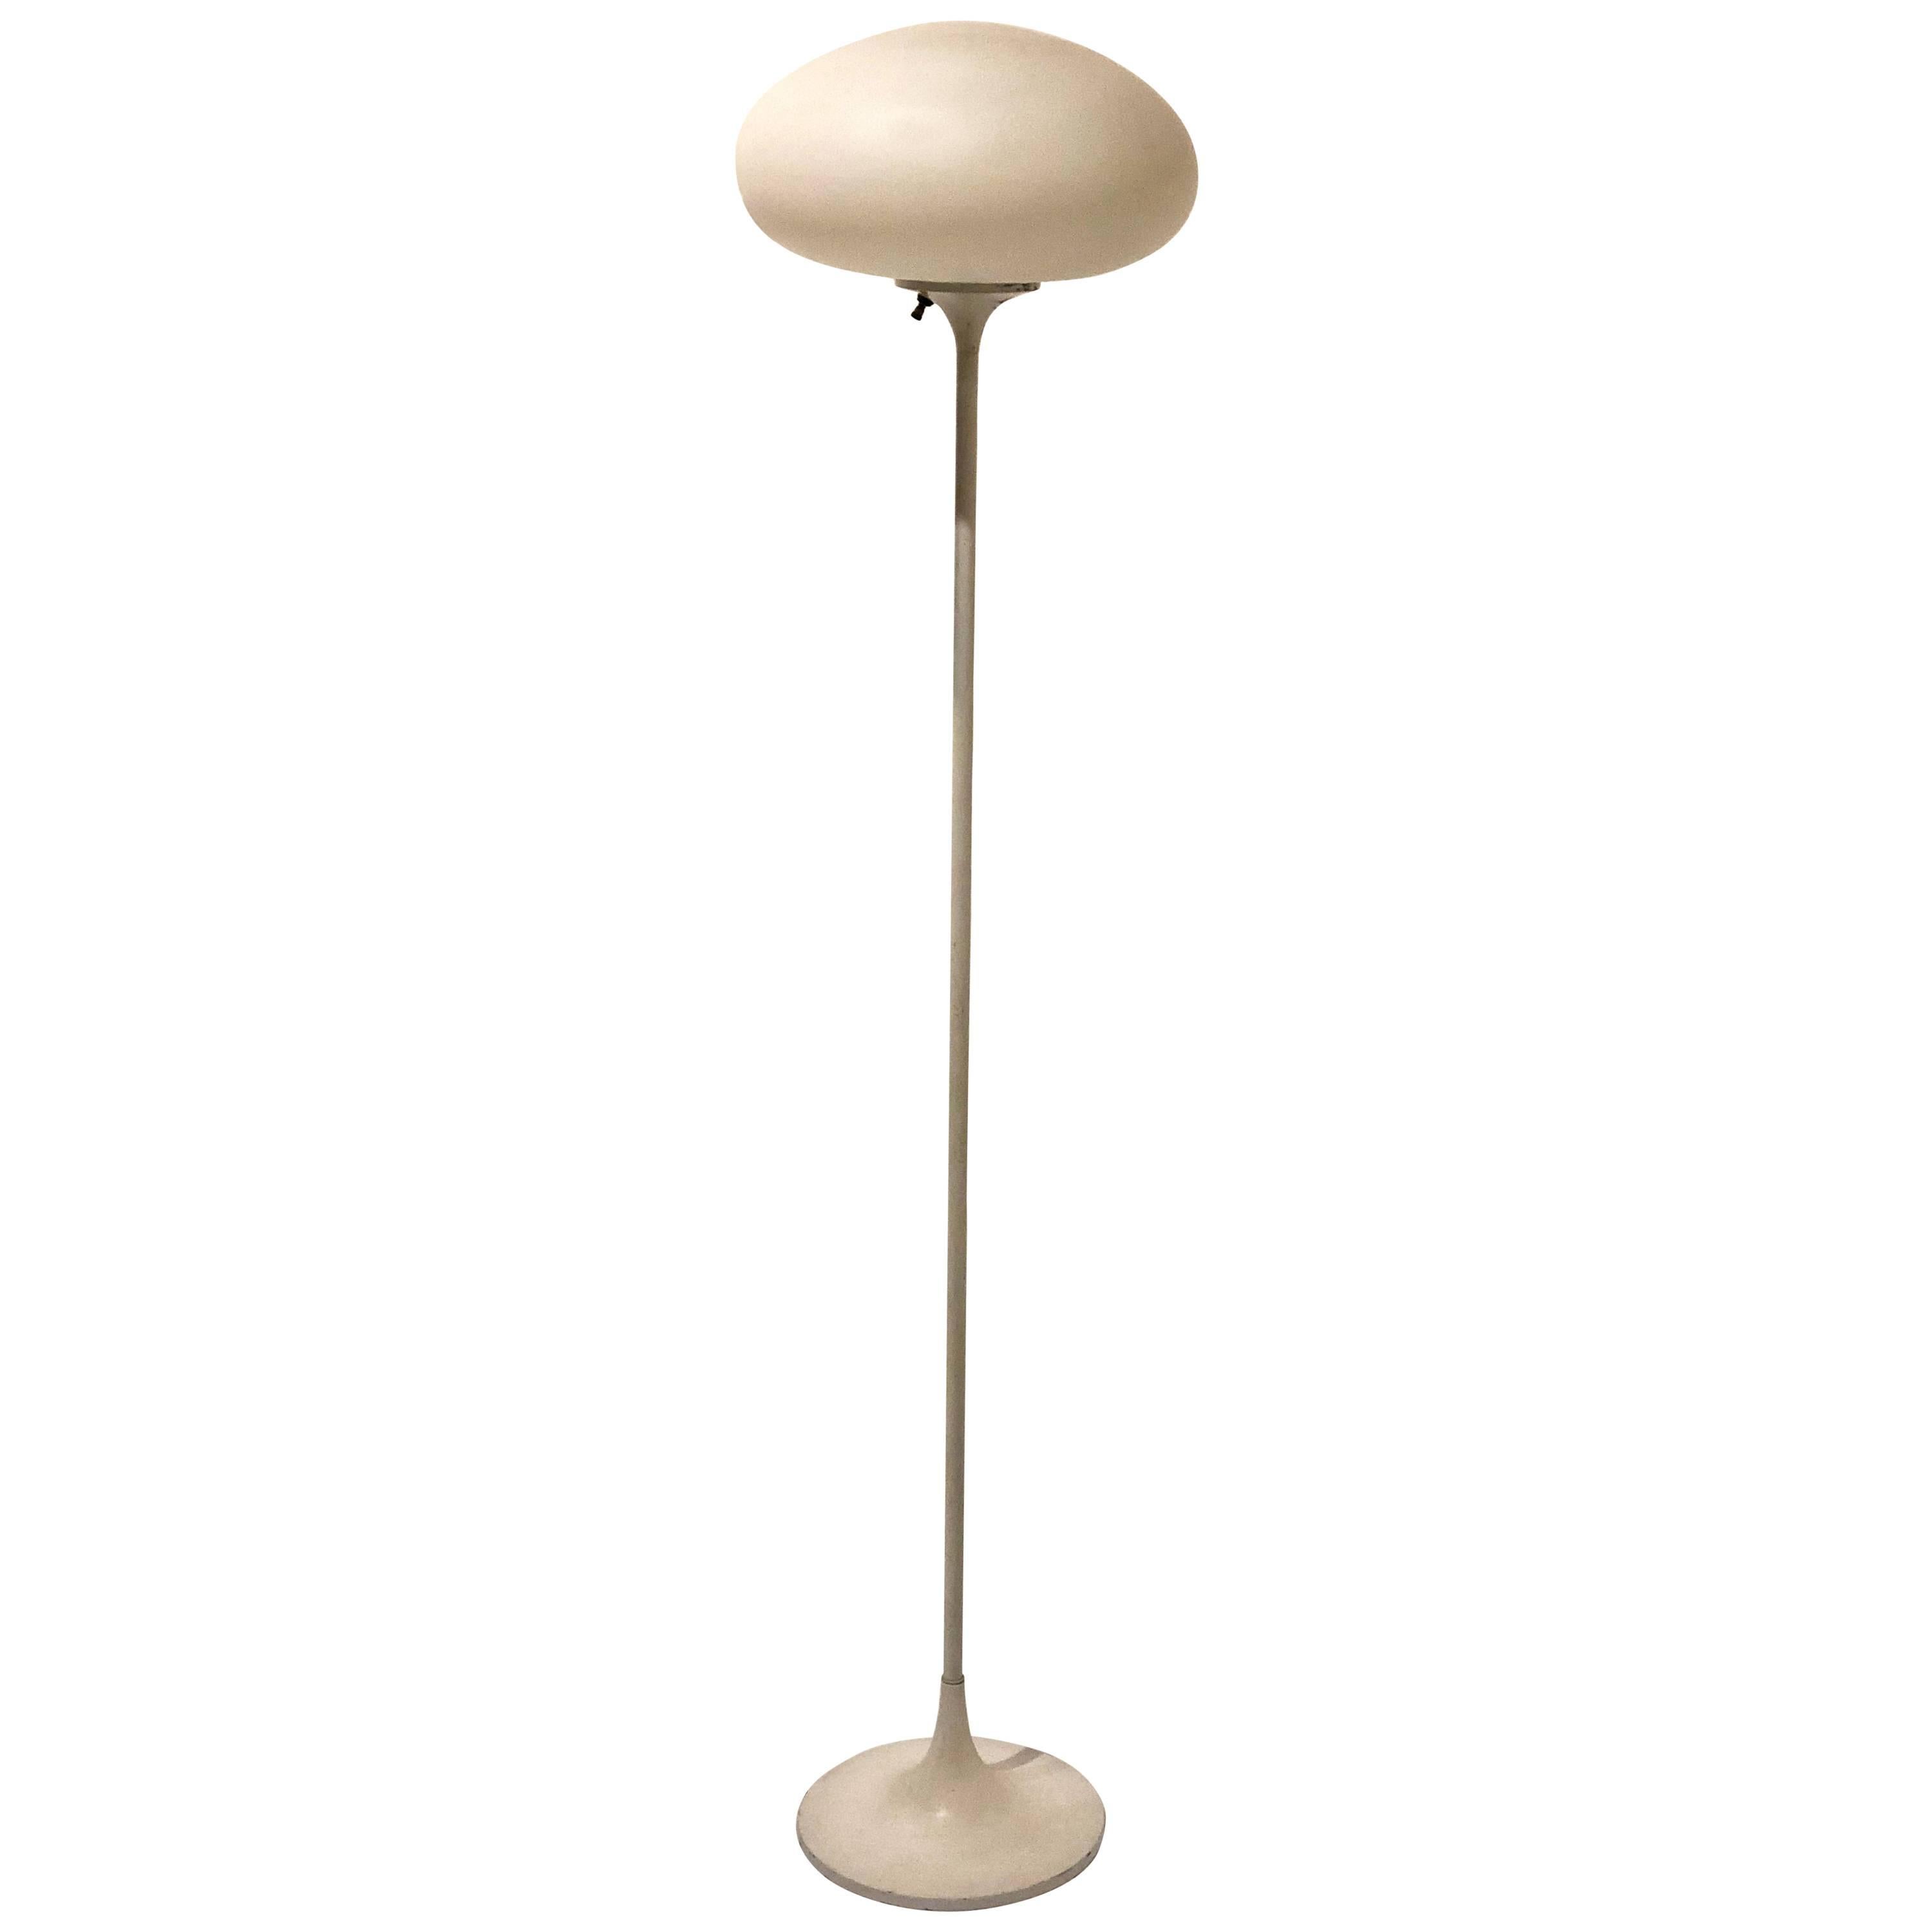 Iconic Space Age Laurel Lighting Mushroom Floor Lamp in Cream Color